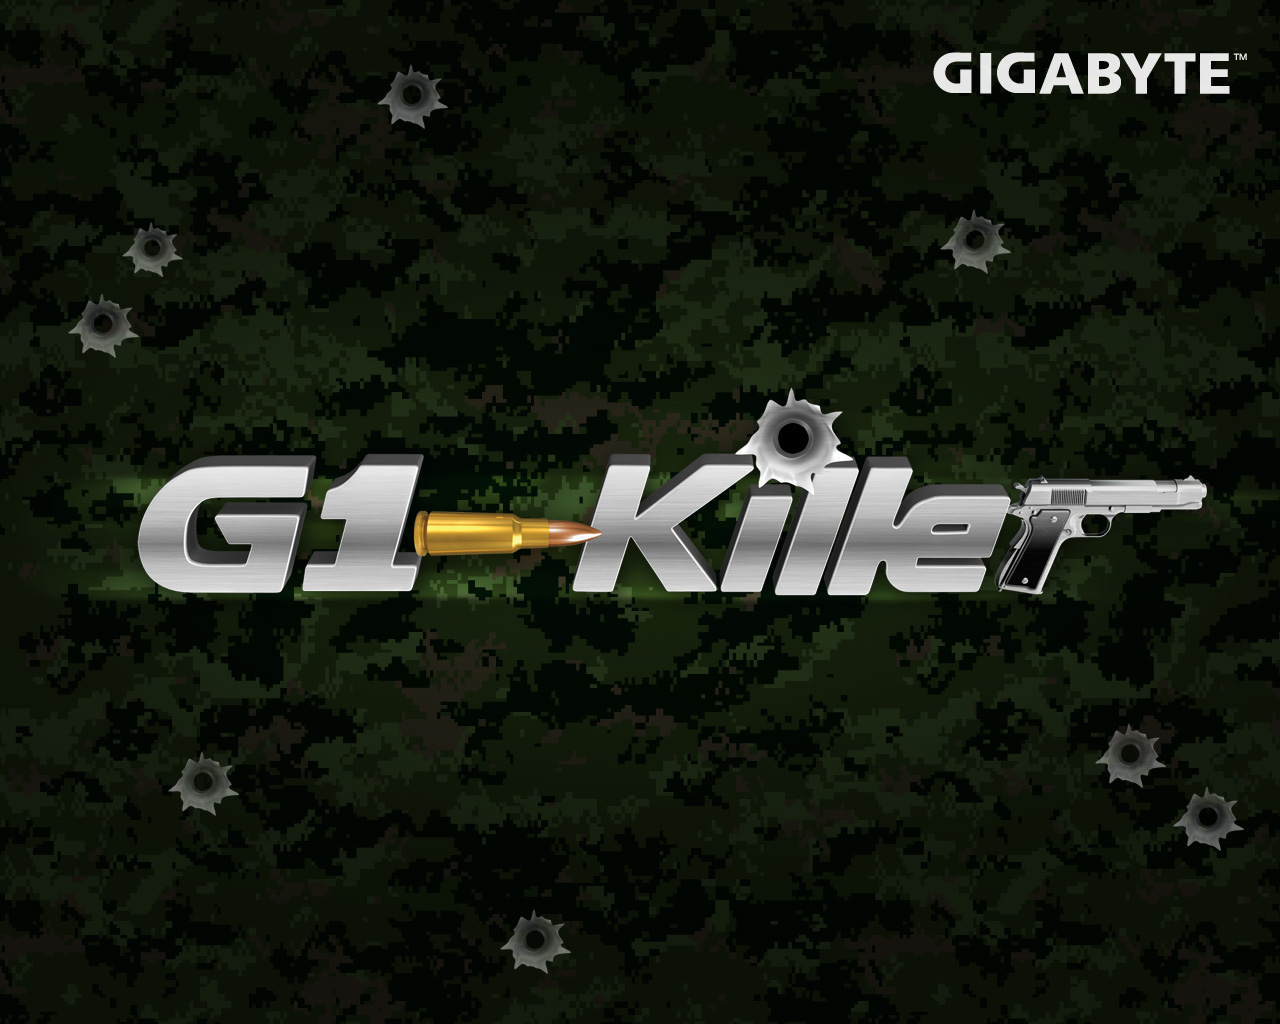 Gigabyte G1 Killer Series Motherboards